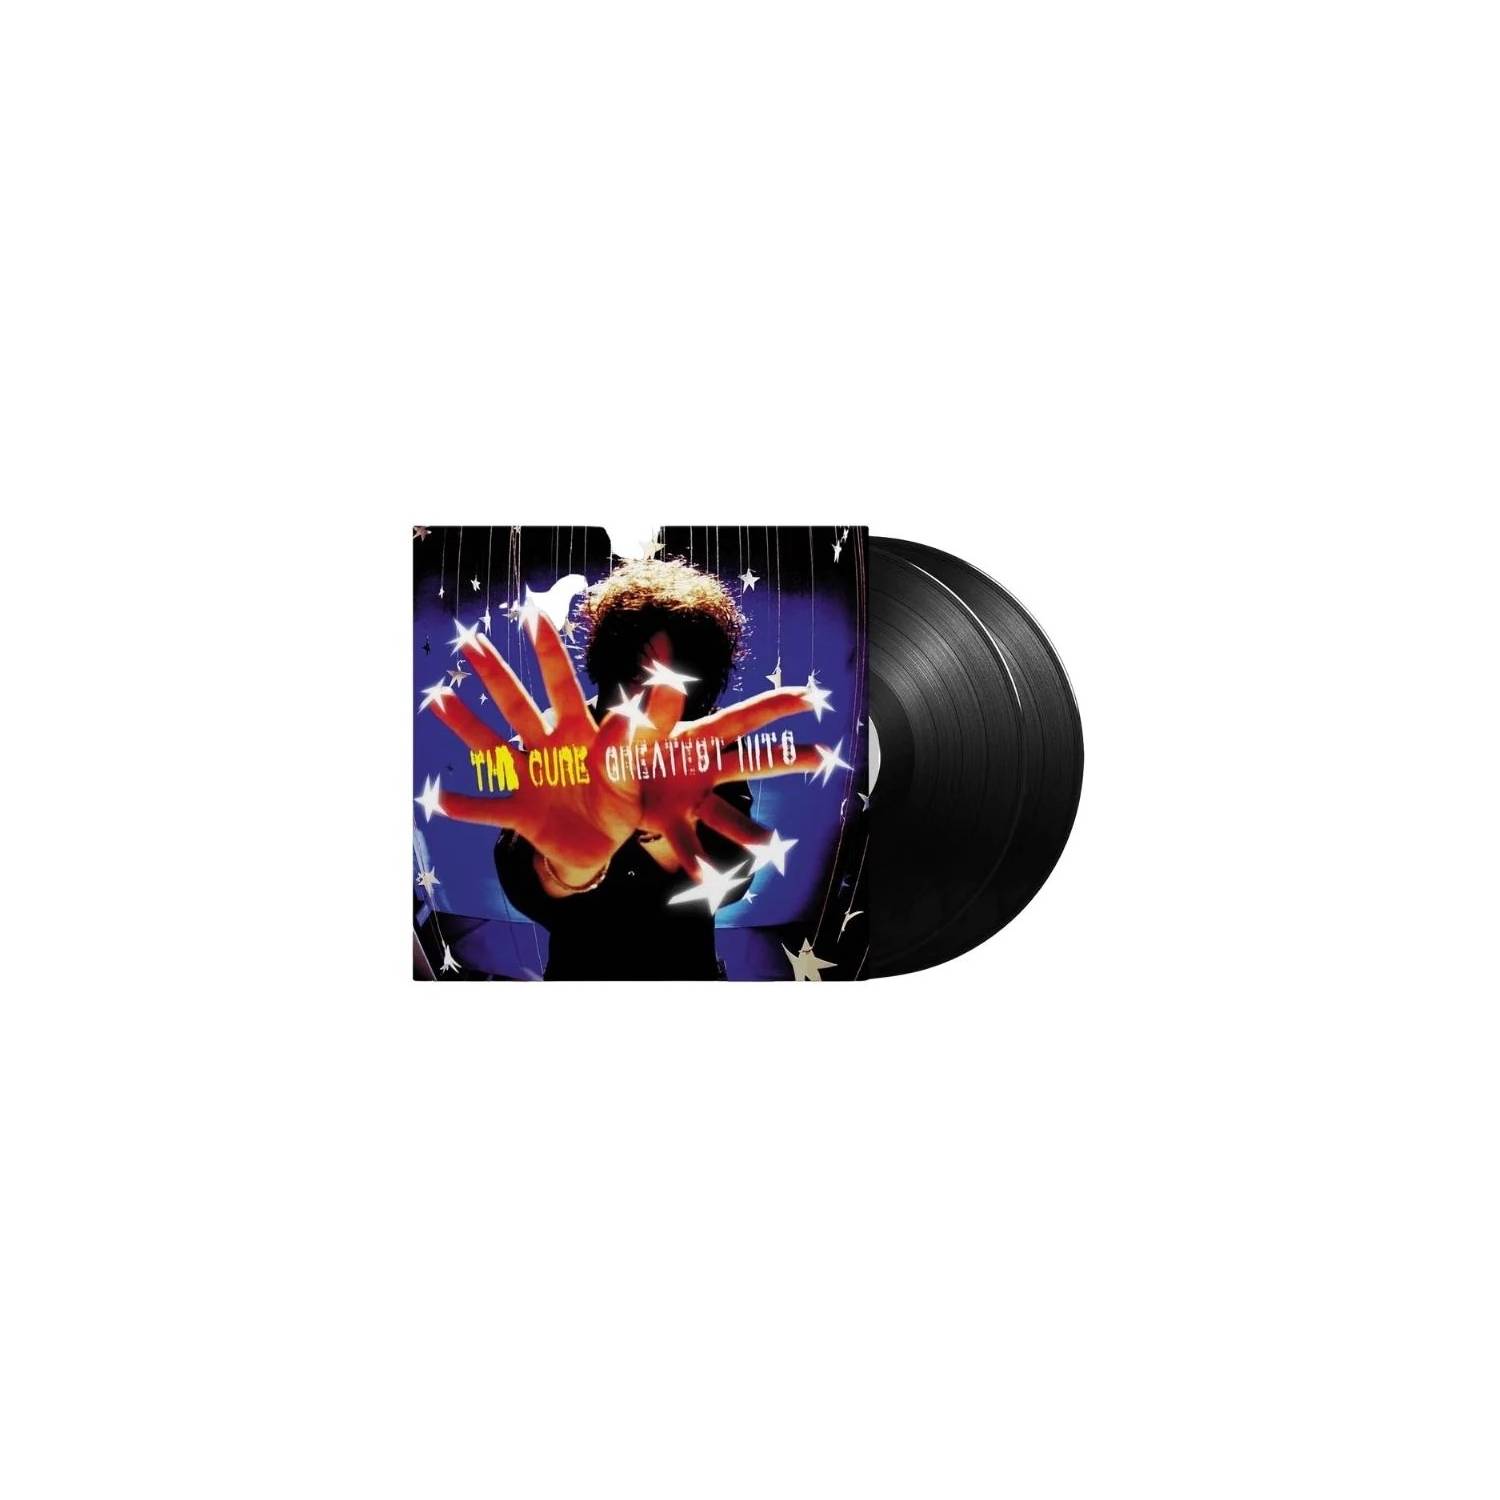 Disco de Vinilo The Cure - Greatest Hits - 602557154344